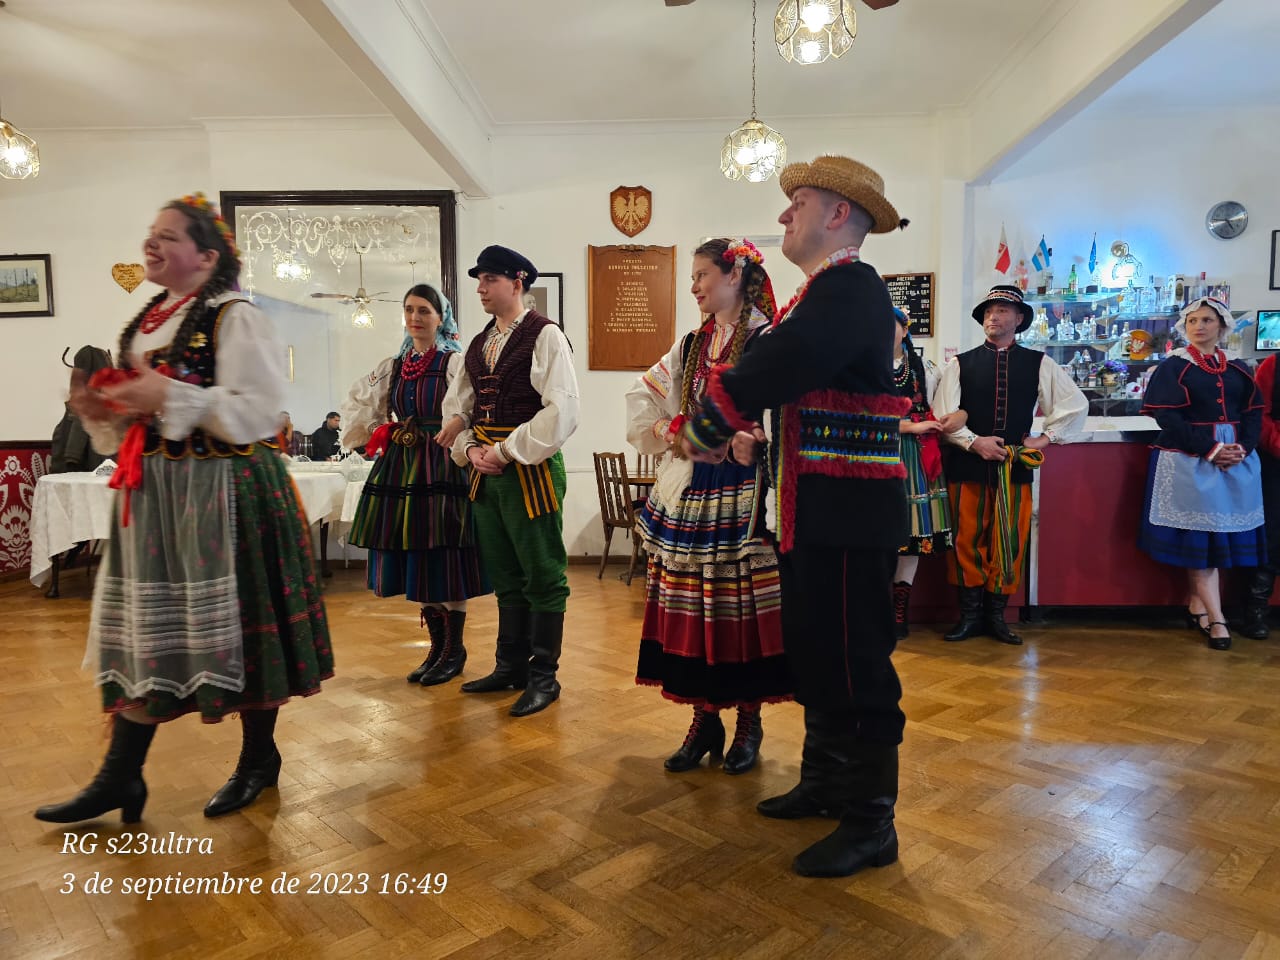 Presentación de danzas y trajes folclóricos polacos